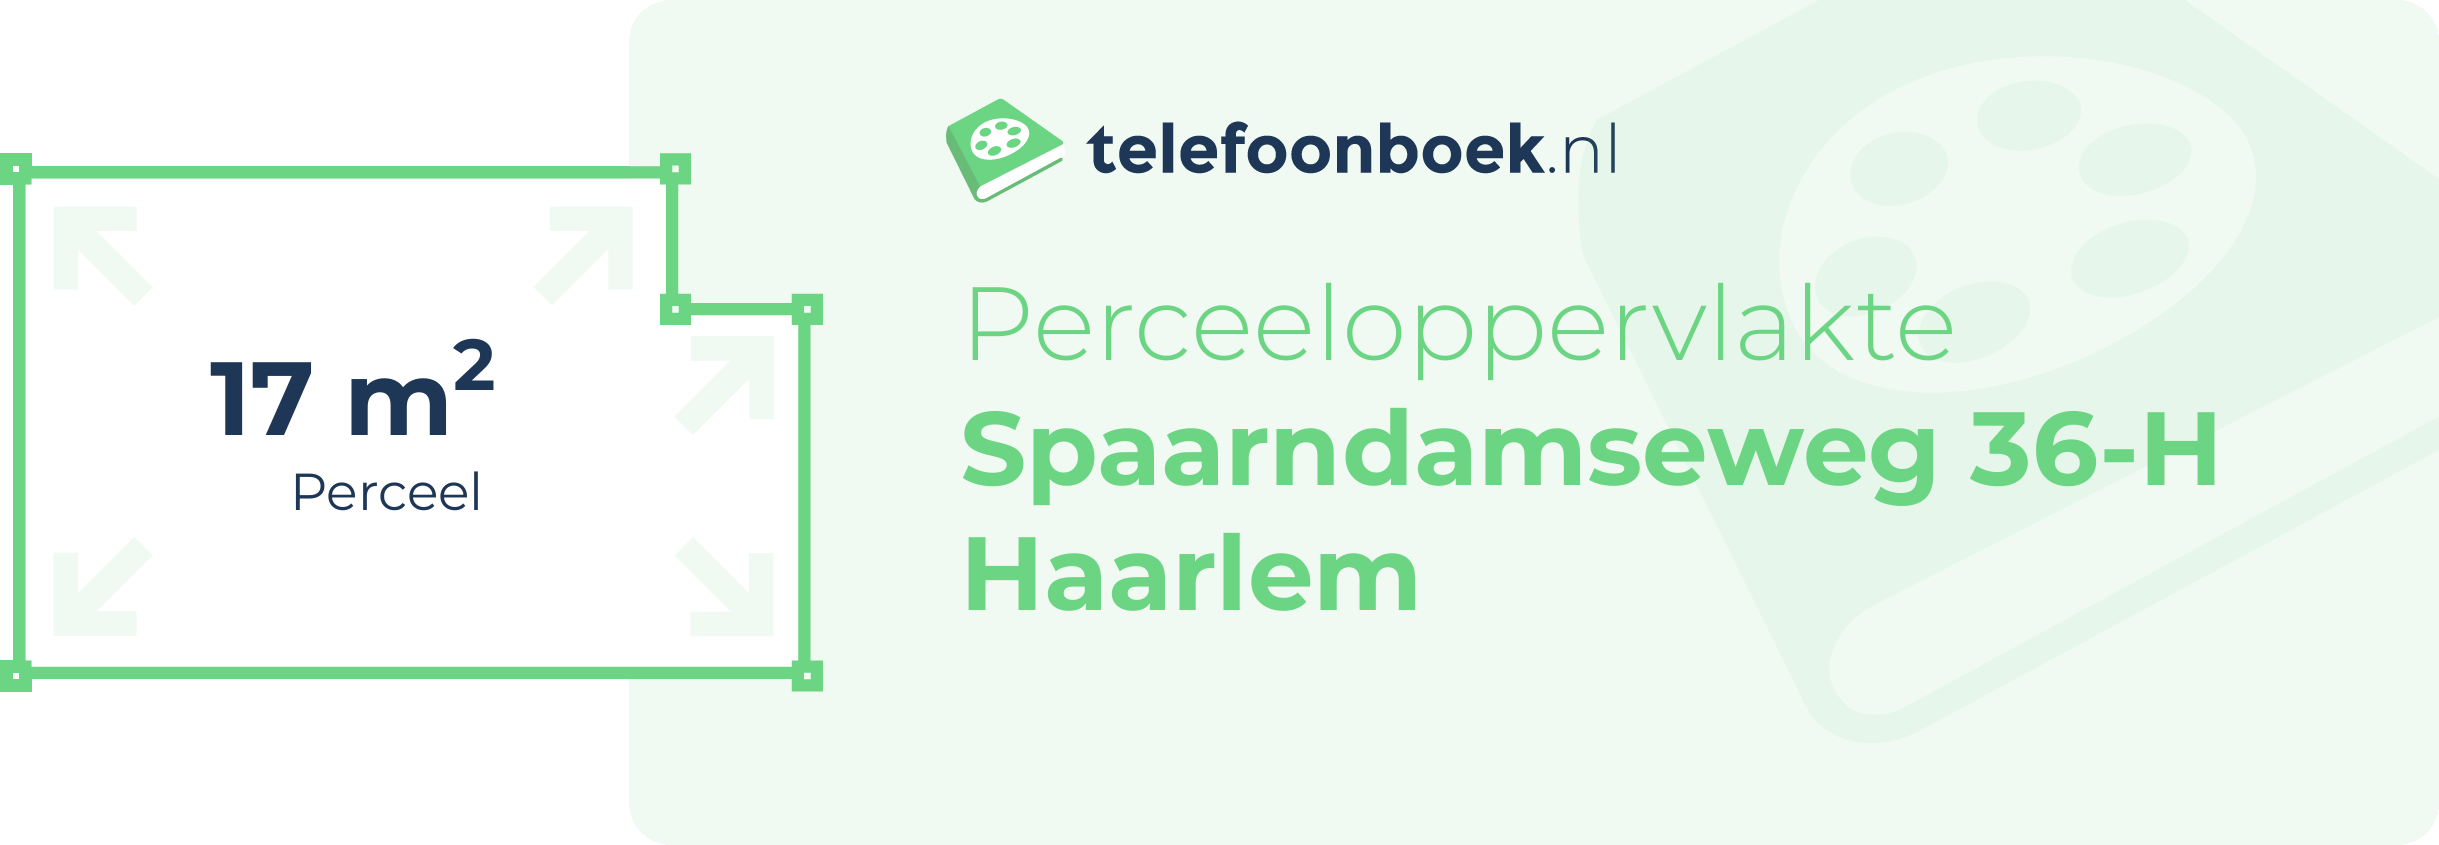 Perceeloppervlakte Spaarndamseweg 36-H Haarlem